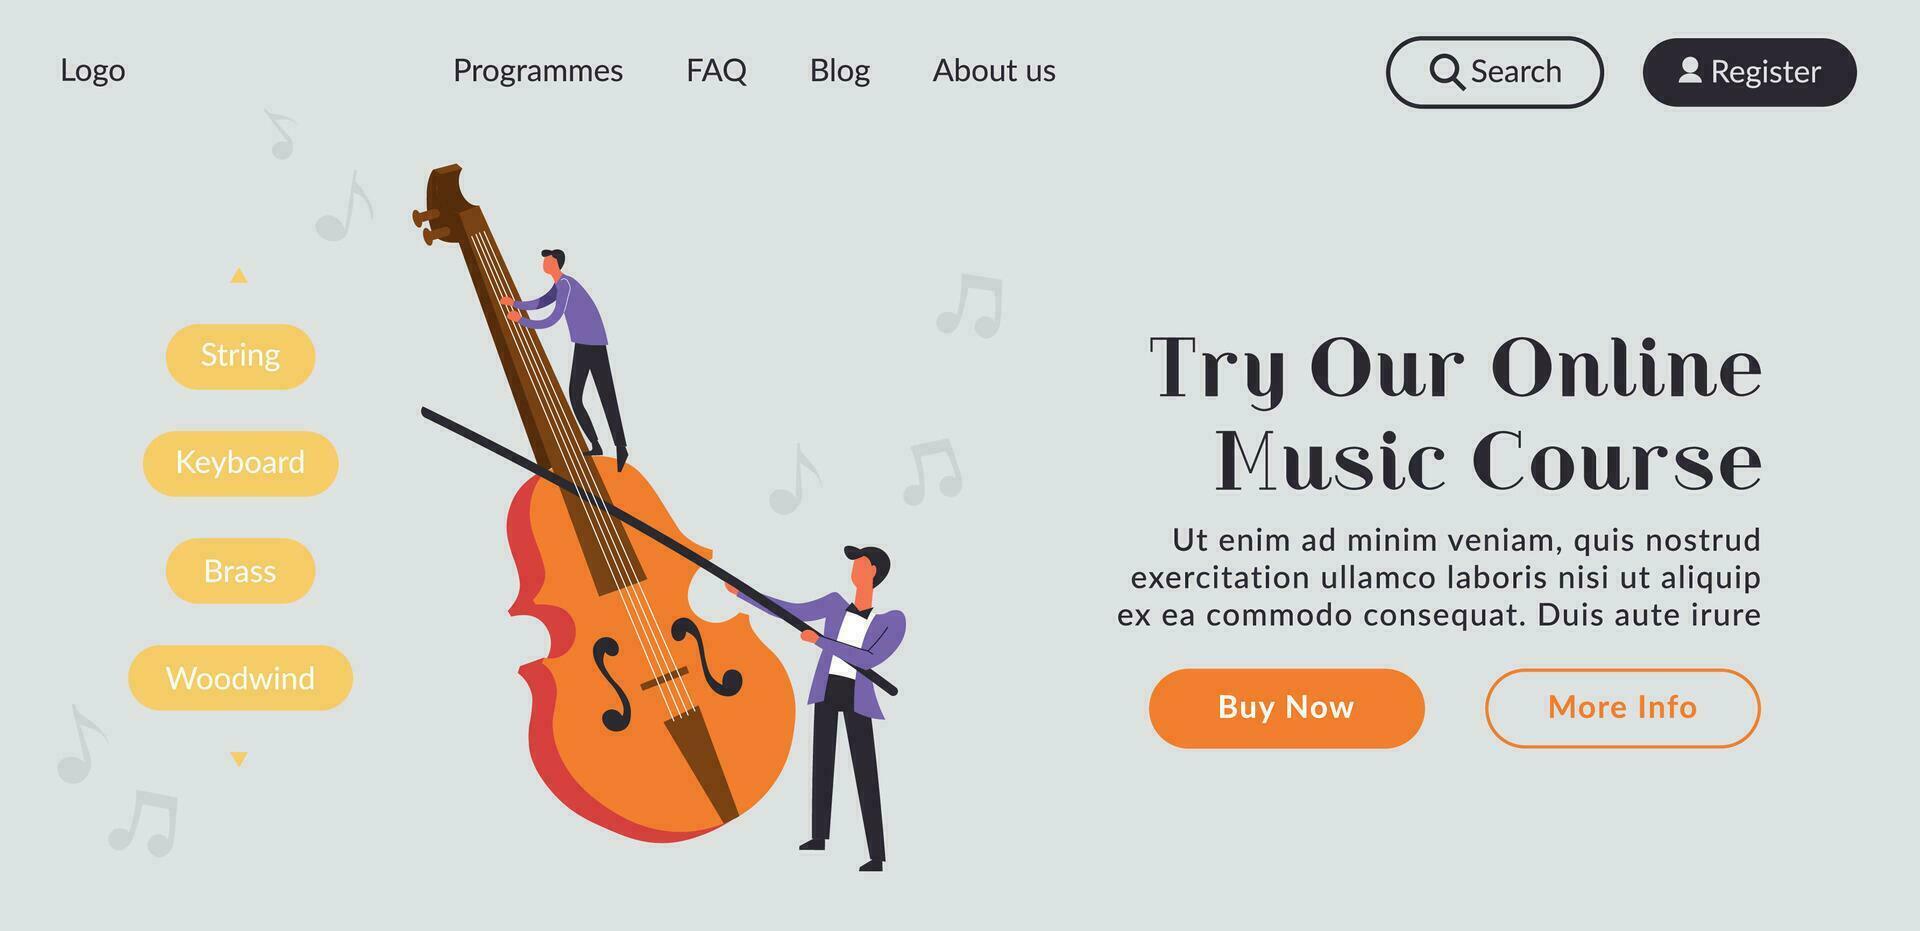 in linea musica corso e classi su violino, sito web vettore